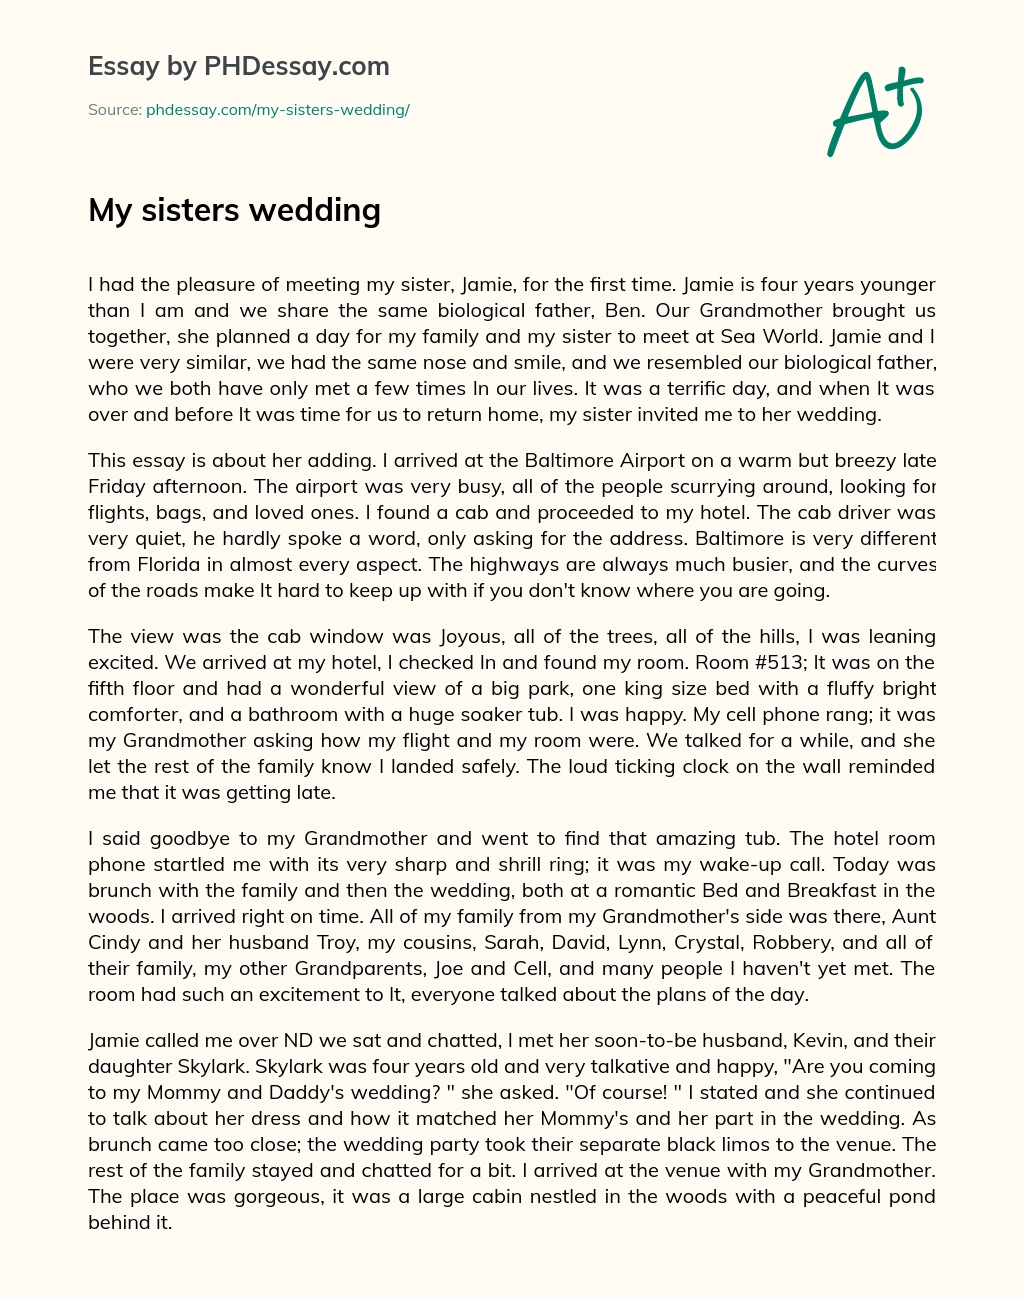 My sisters wedding essay